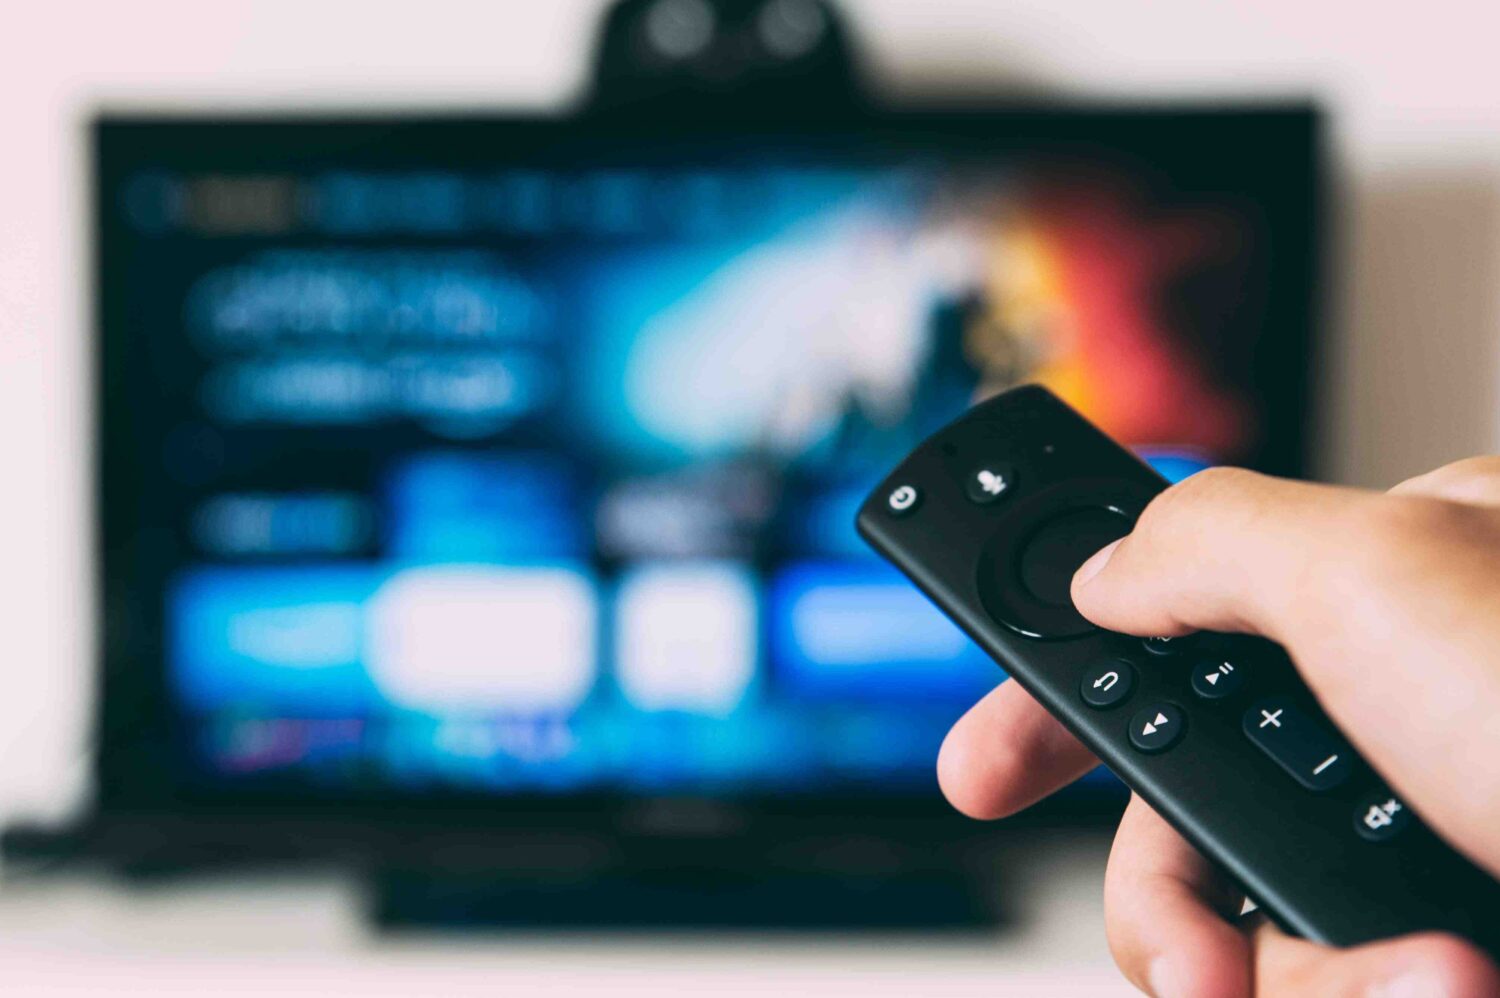 Comment regarder la télé en direct sur internet gratuitement  ?